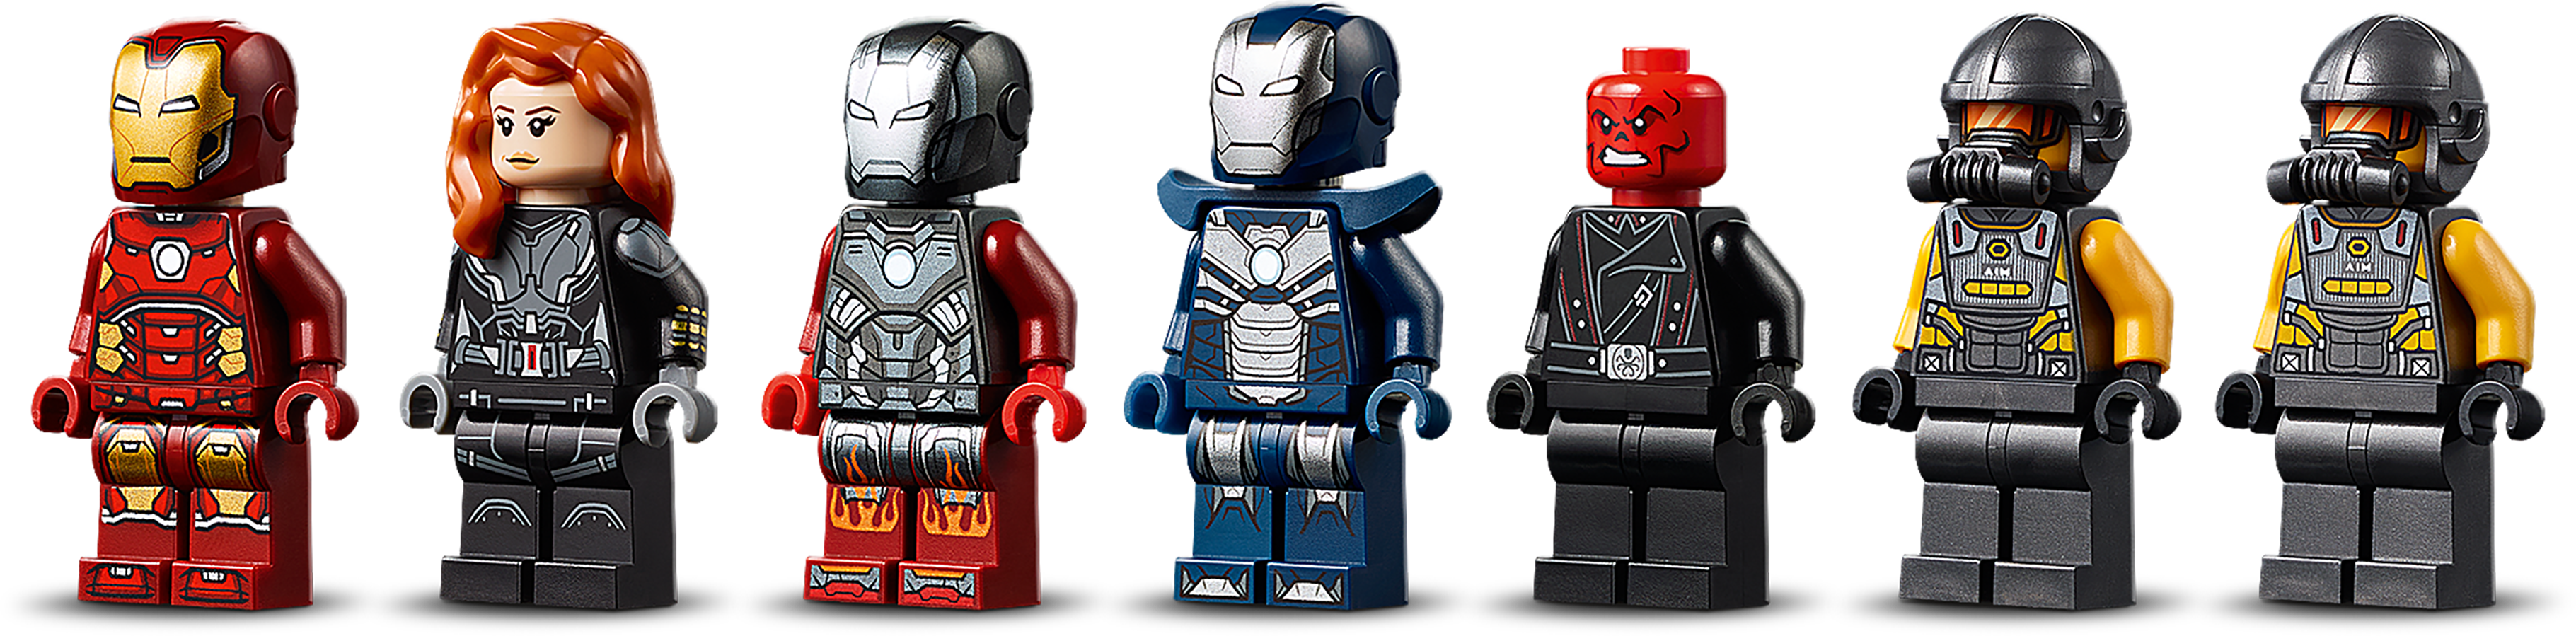 custom lego marvel minifigures for sale